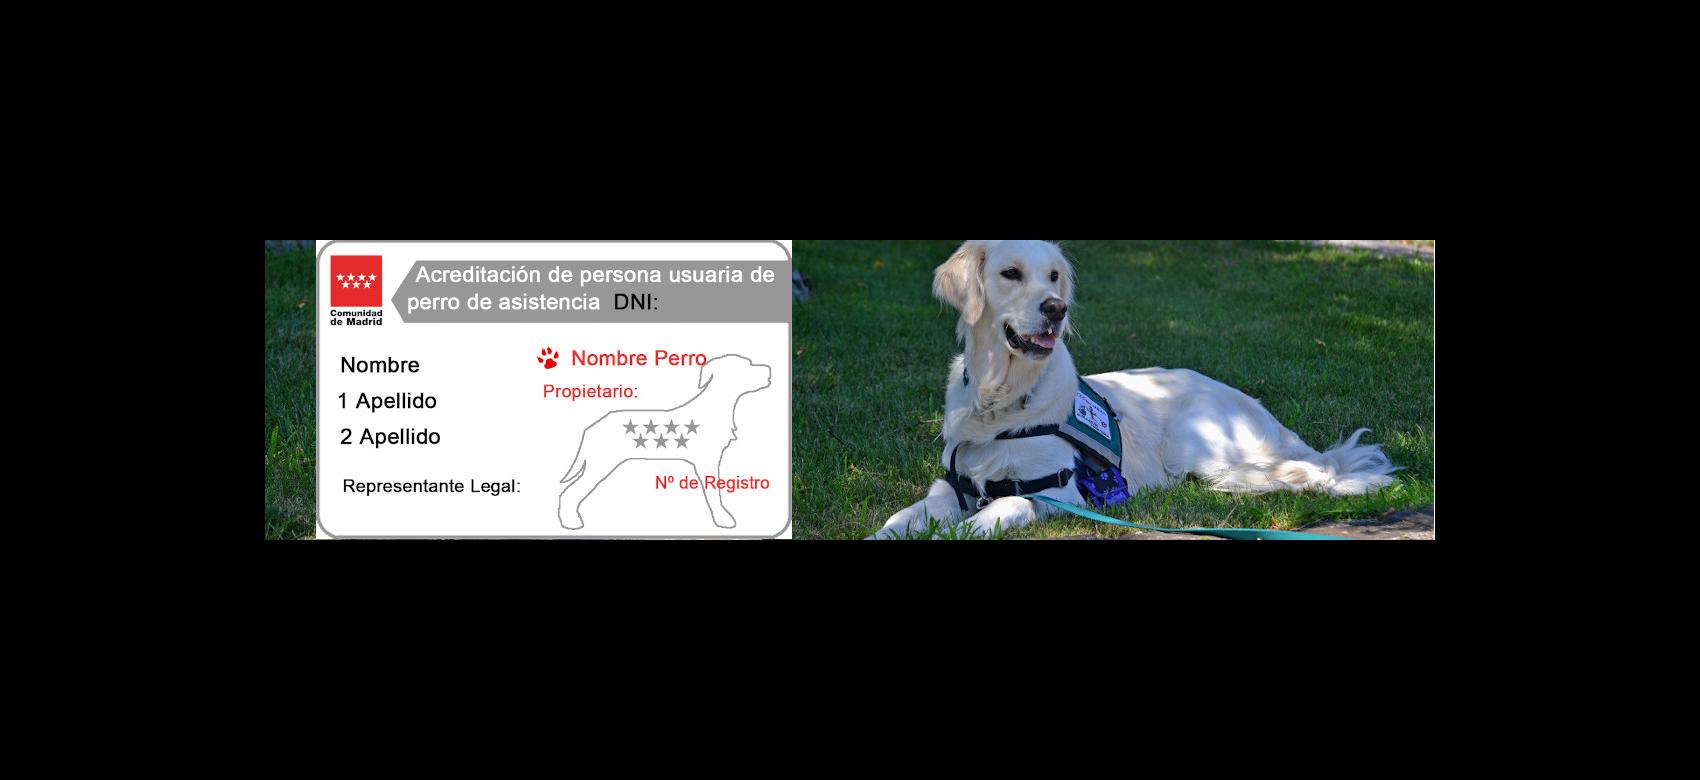 Imagen compuesta que muestra un perro de asistencia y el modelo de carné que acredita el vínculo de la persona usuaria con el perro